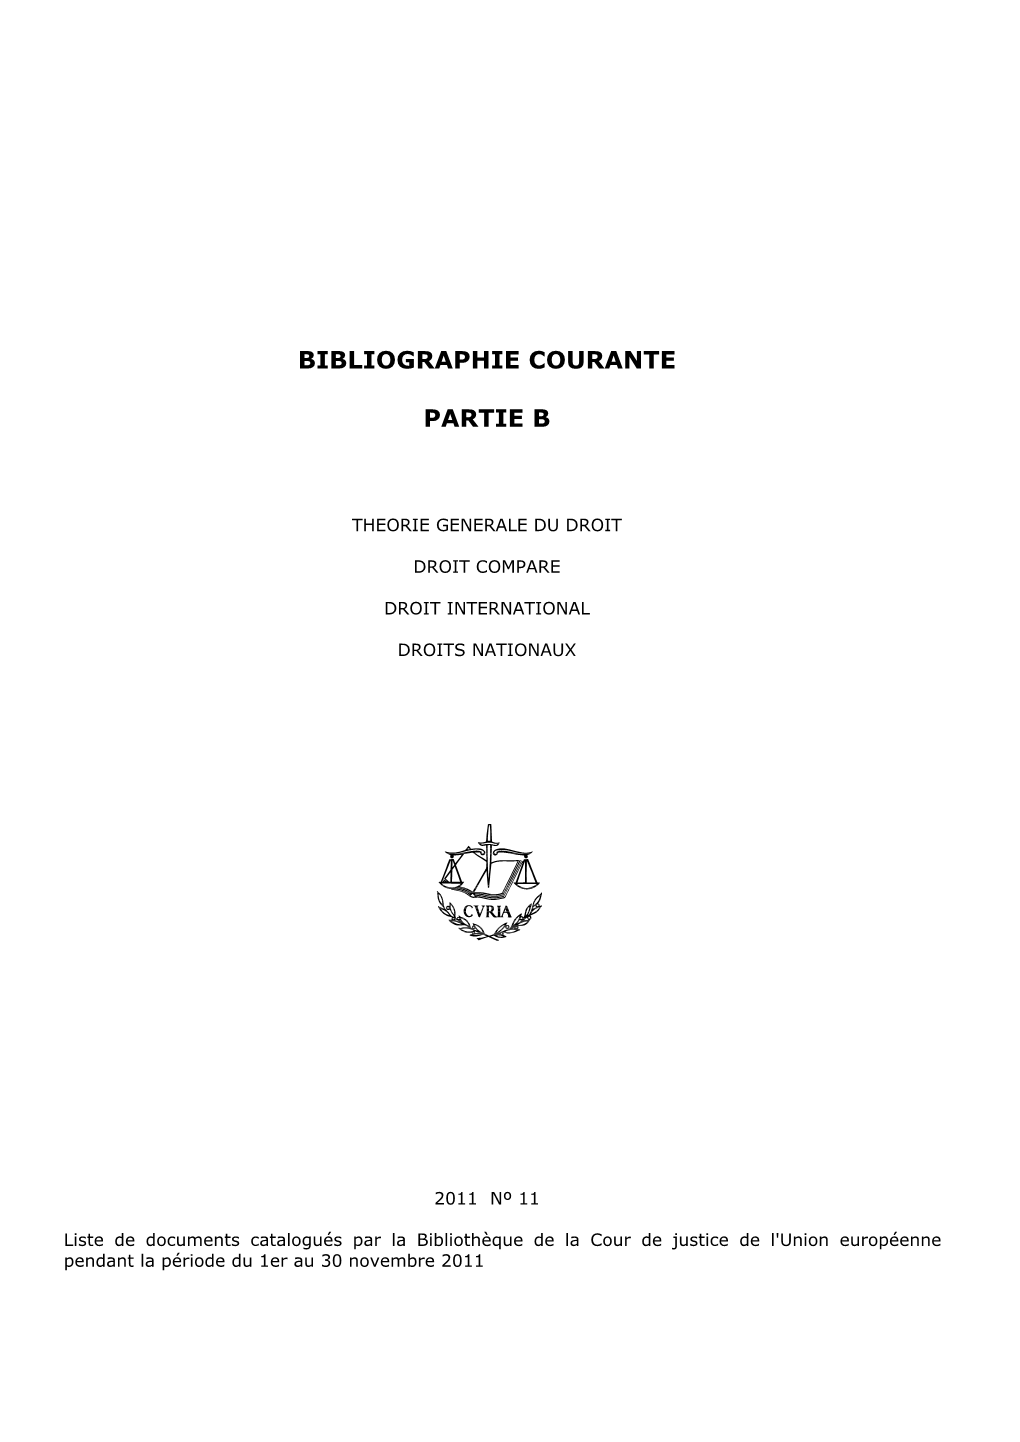 CJUE - Système Symphony Bibliothèque - Bibliographie Courante Edition Du 13/02/2012 - Droit International, Droits Nationaux, Et